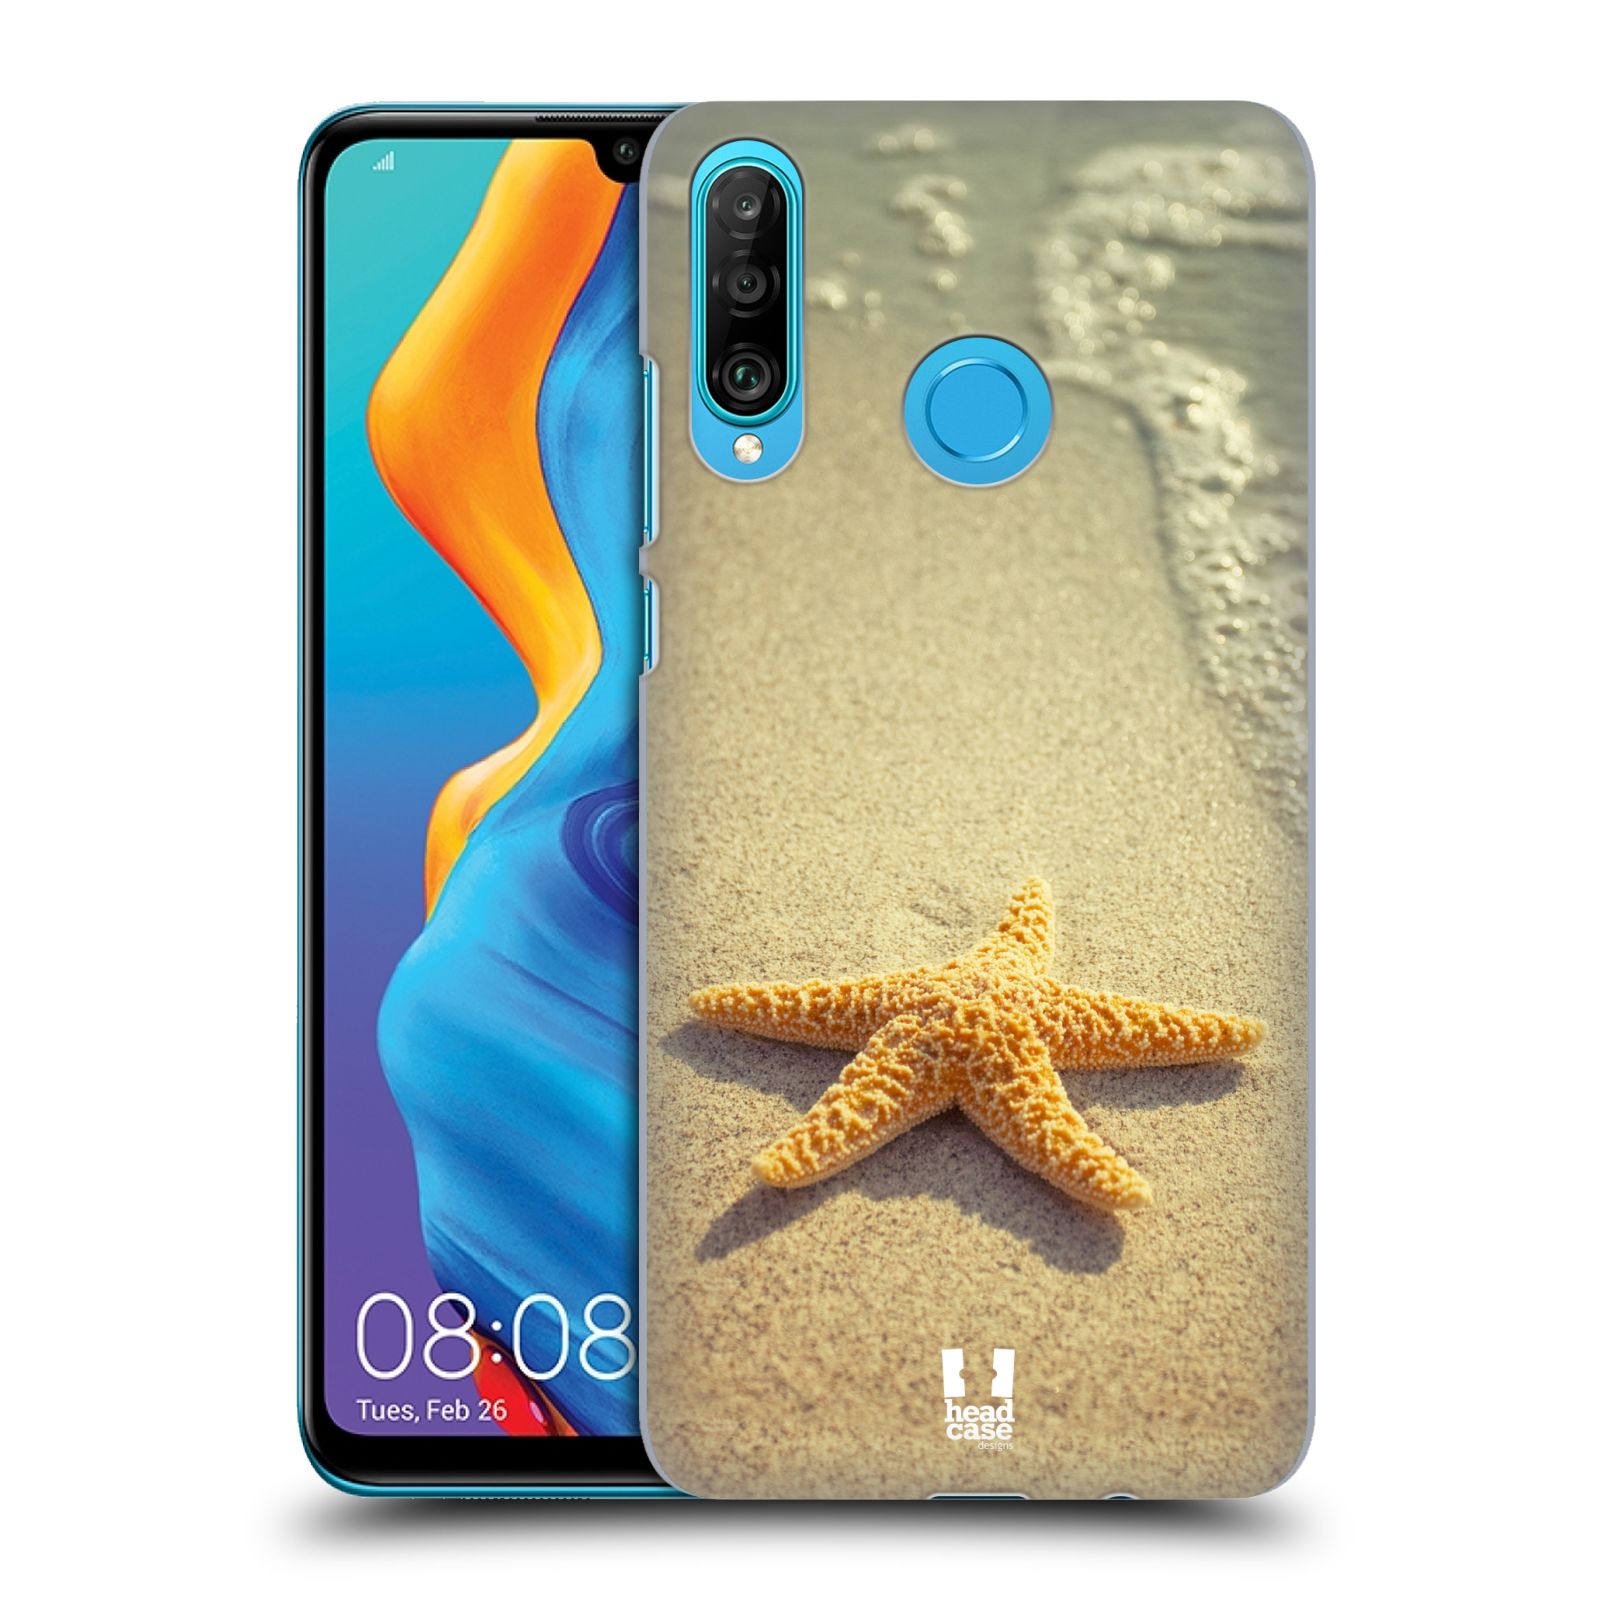 Pouzdro na mobil Huawei P30 LITE - HEAD CASE - vzor slavná zvířata foto hvězda na břehu